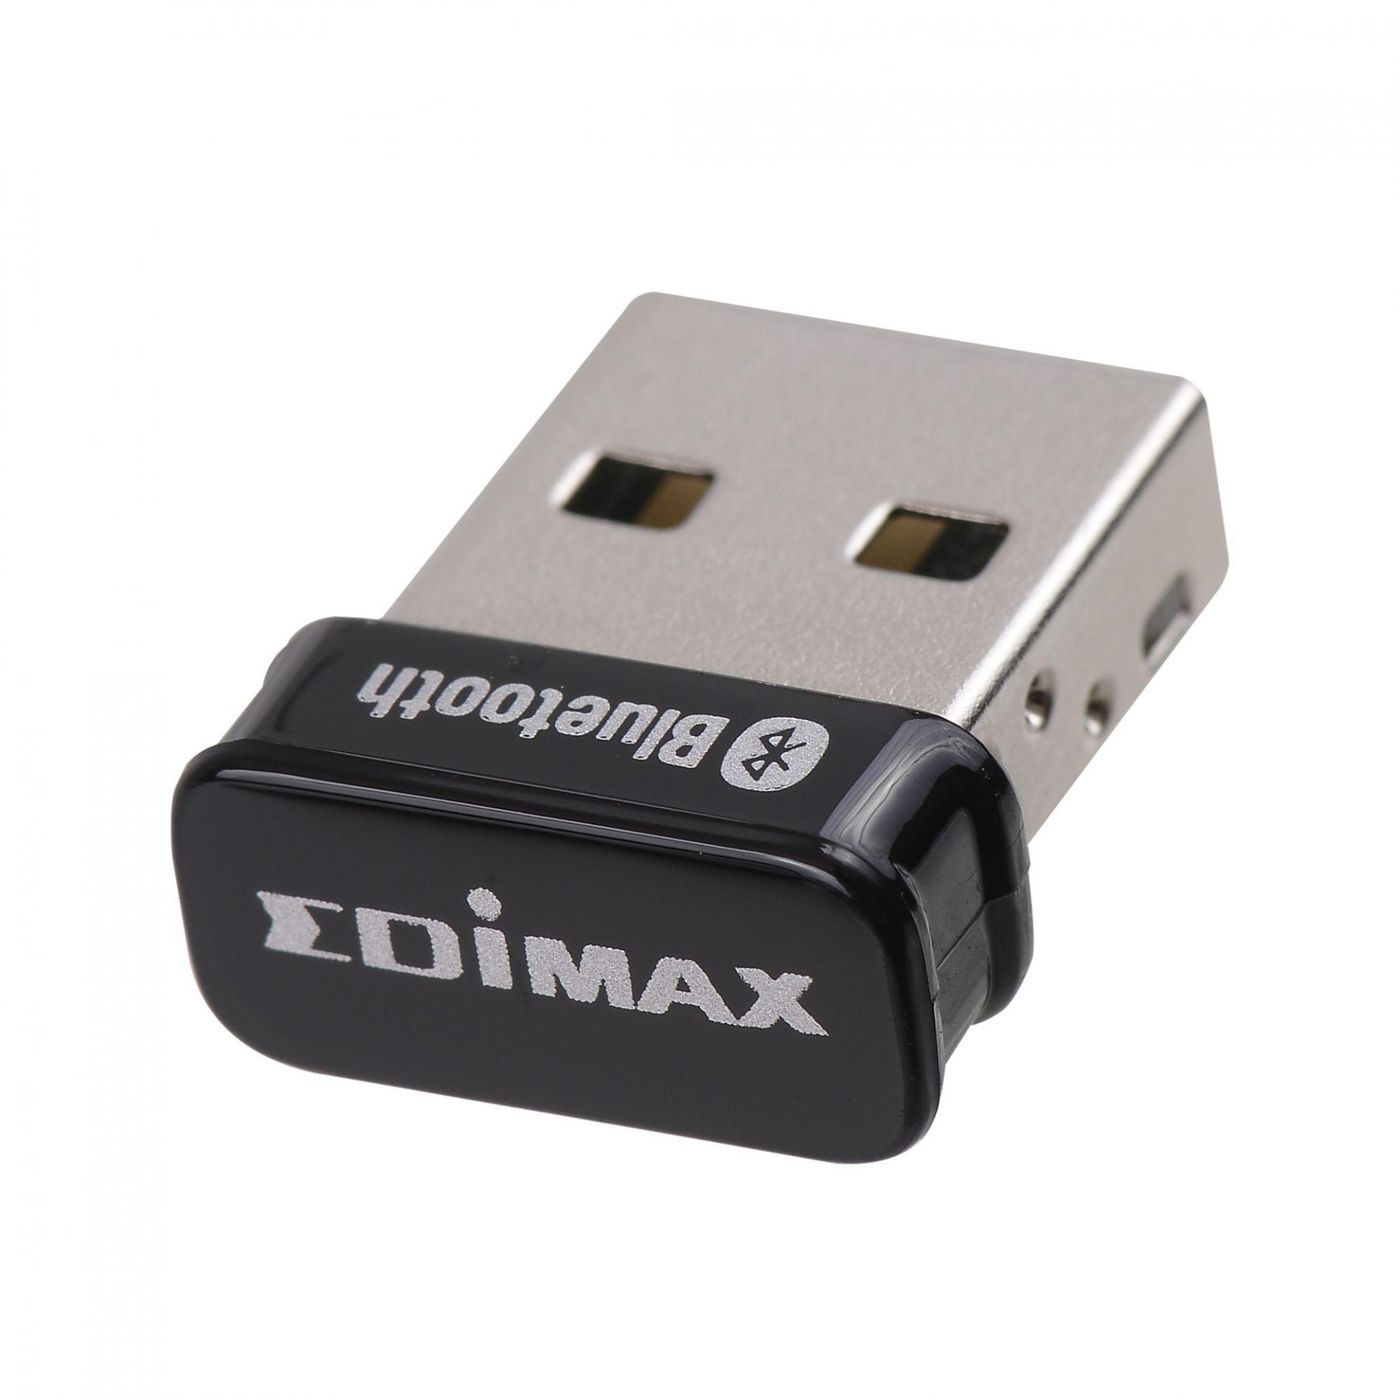 Edimax BT-8500 W125873203 Bluetooth 5.0 Nano USB Adapter 